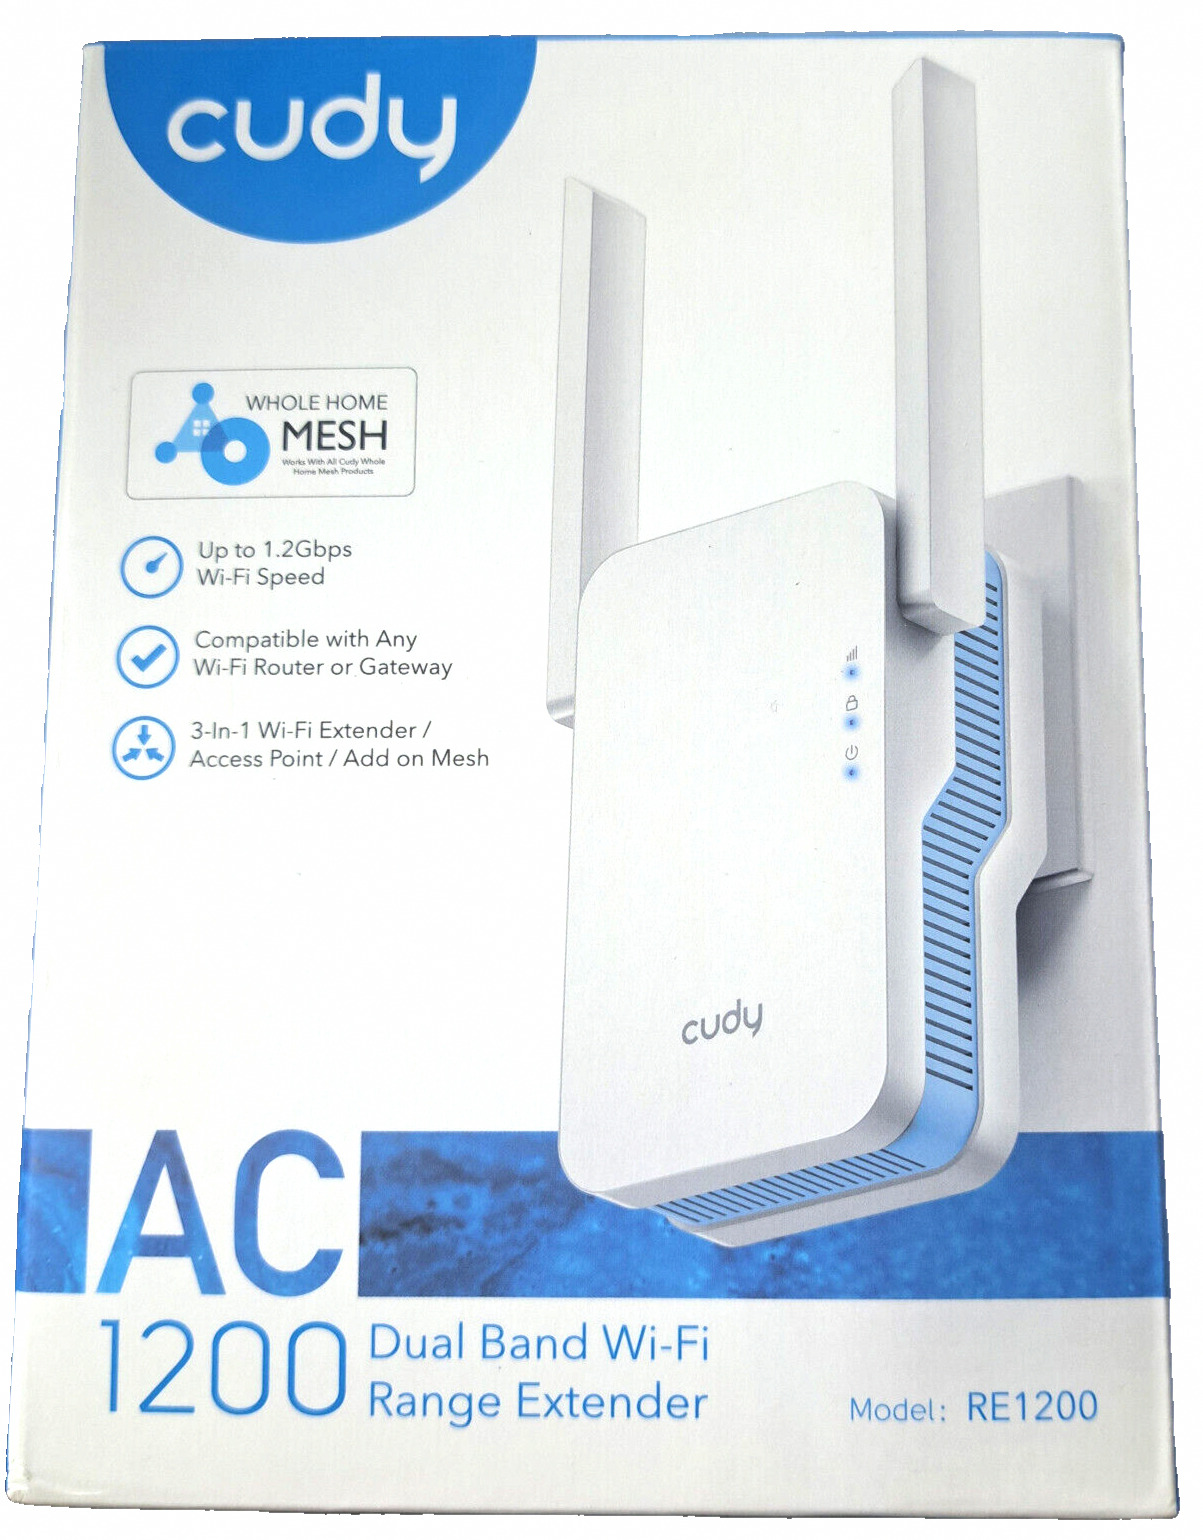 Cudy WiFi Extender AC1200 with 1.2Gbps WiFi Speeds. 30+ Devices, 5GHz & 2.4GHz